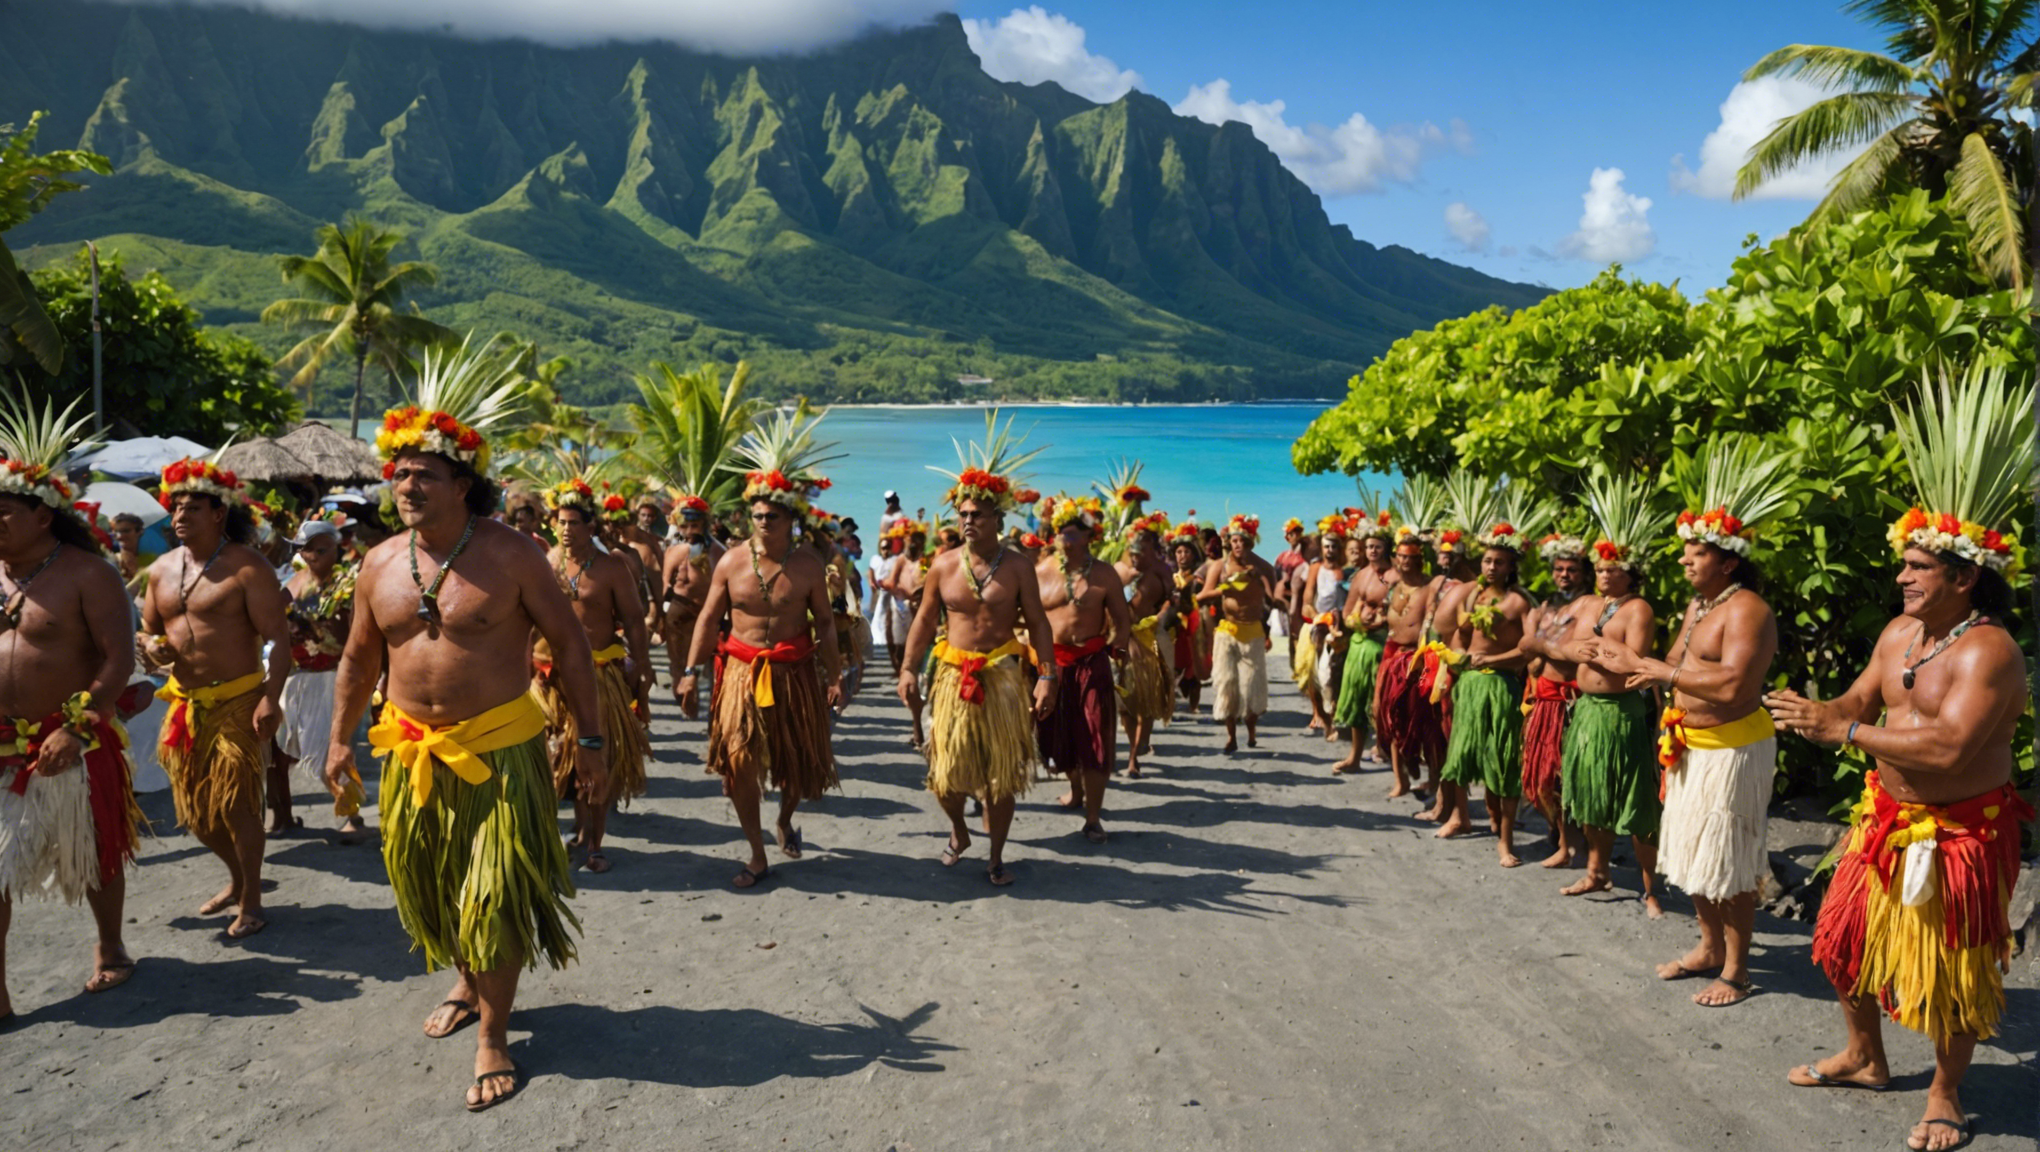 découvrez les festivités traditionnelles envoûtantes qui animent les îles polynésiennes de tahiti. profitez d'une immersion culturelle unique au cœur du pacifique.